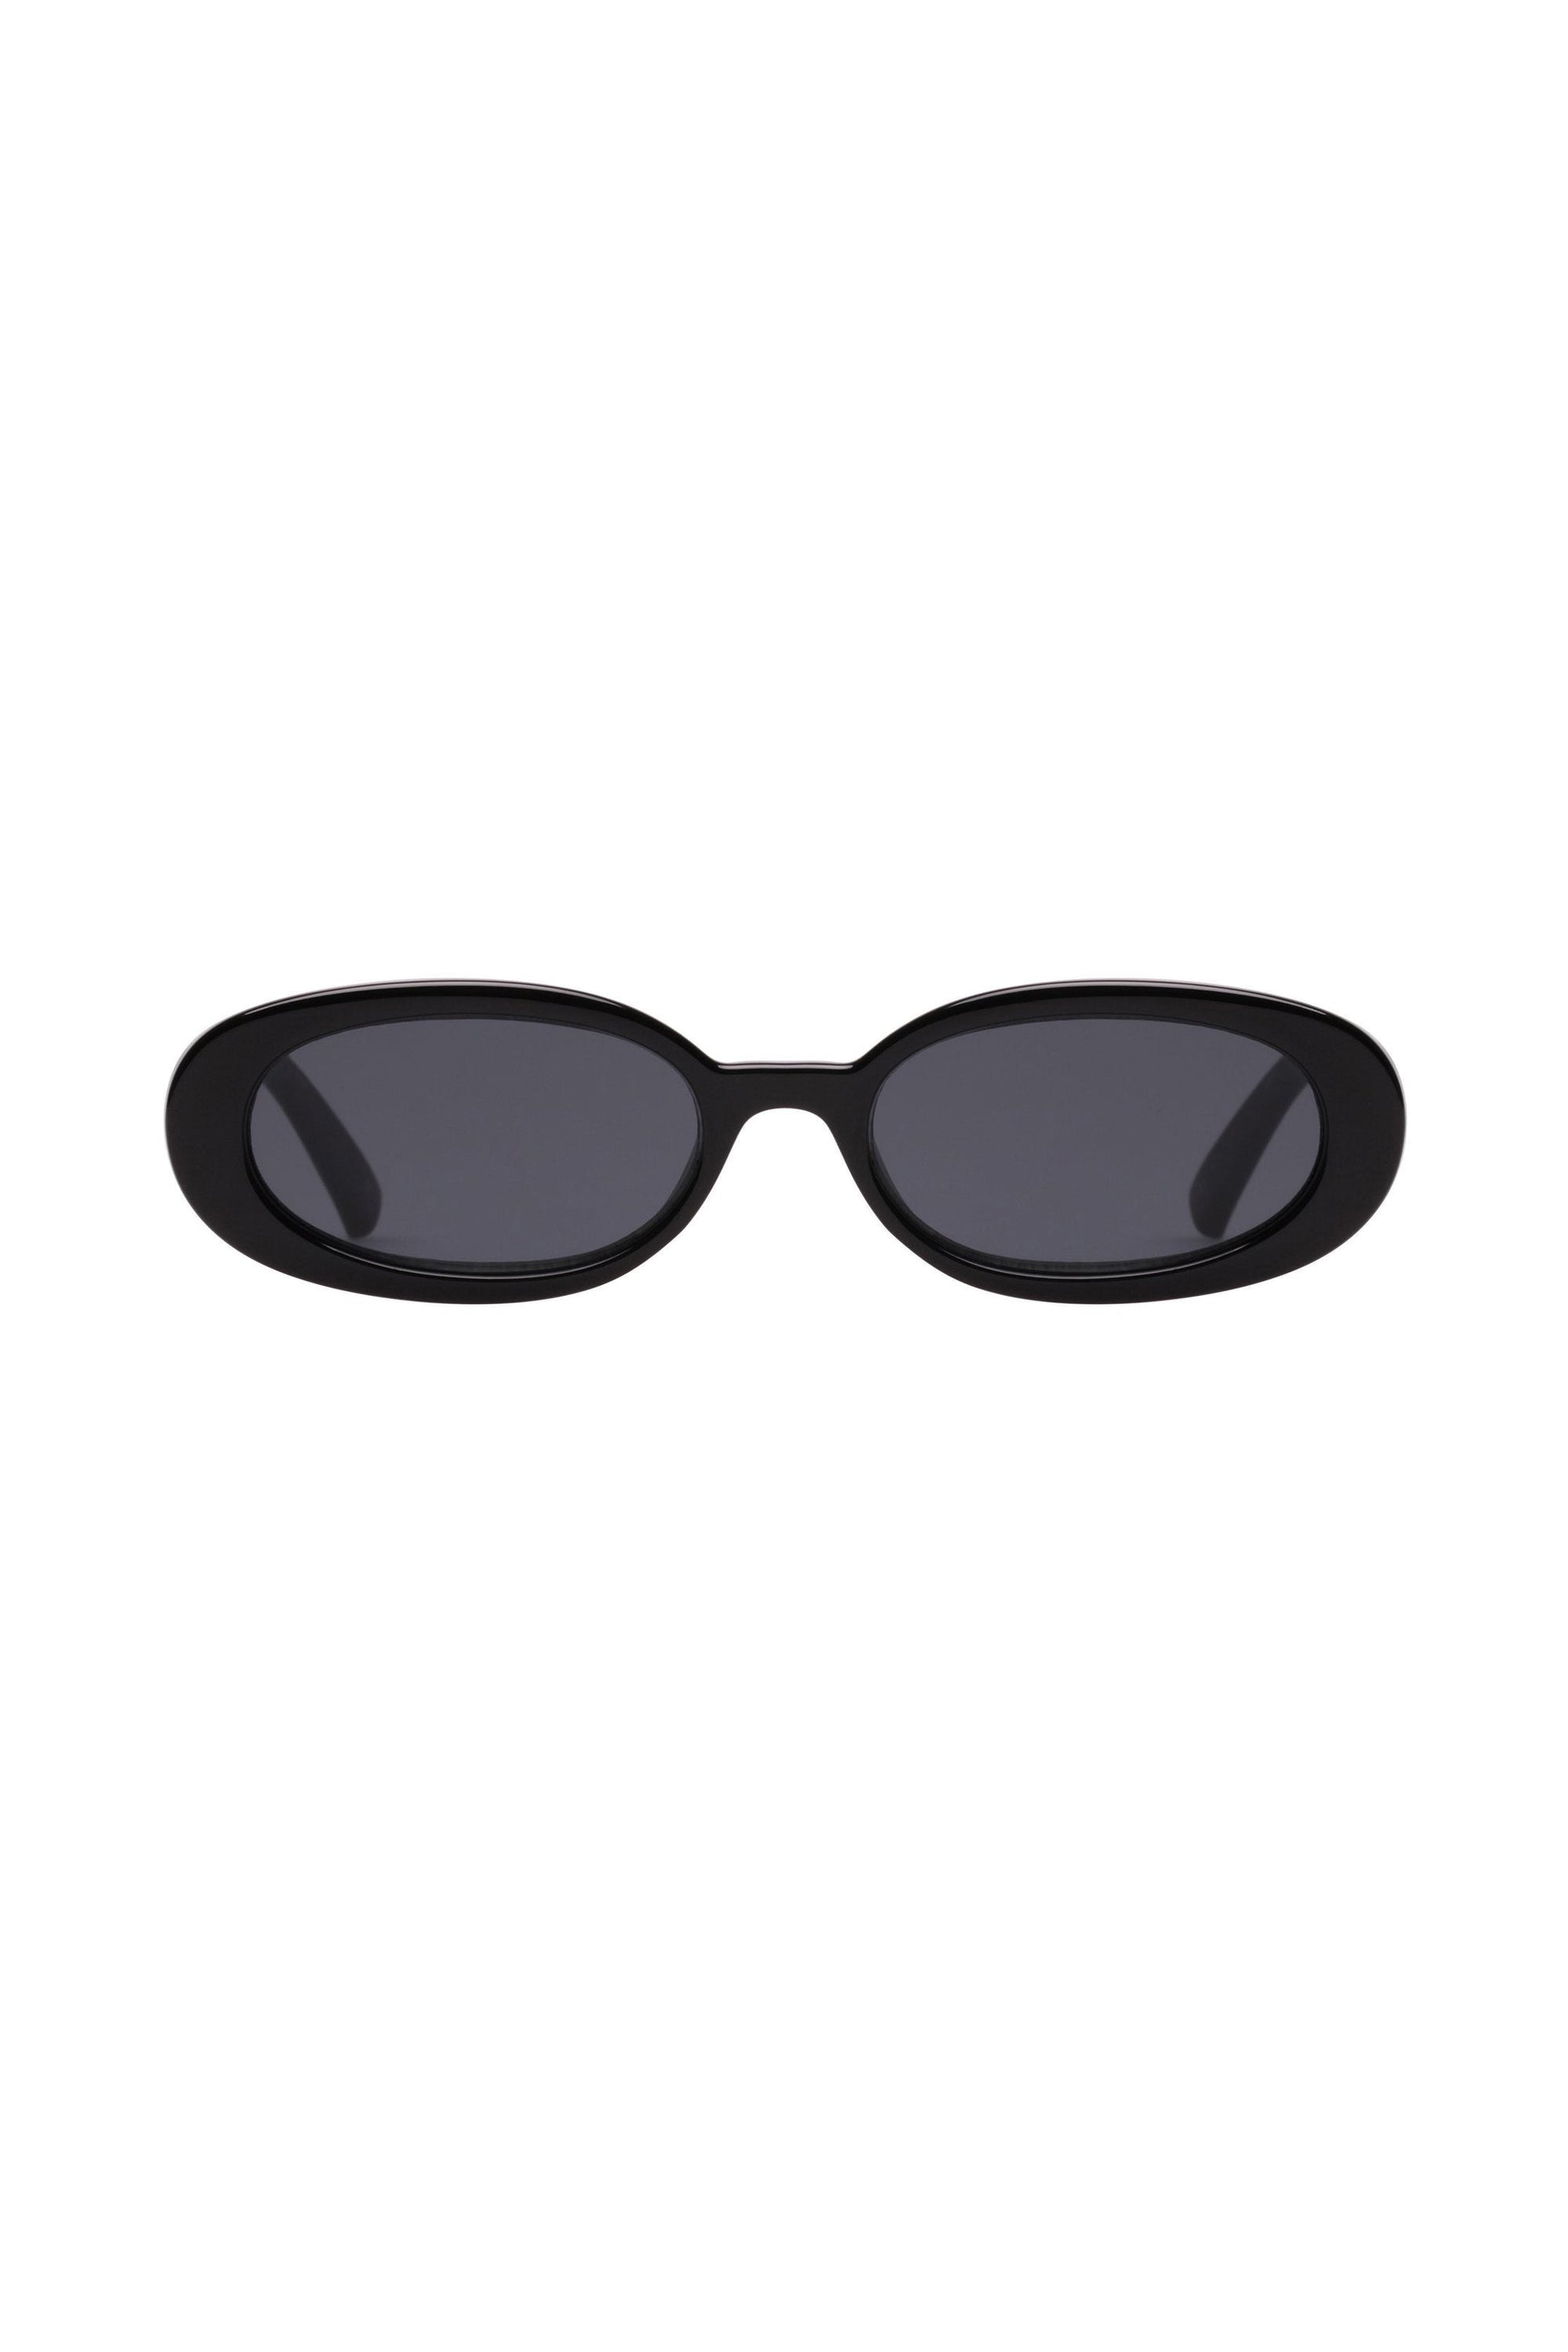 Le Specs Outta Love Sunglasses - Shiny Black - RUM Amsterdam